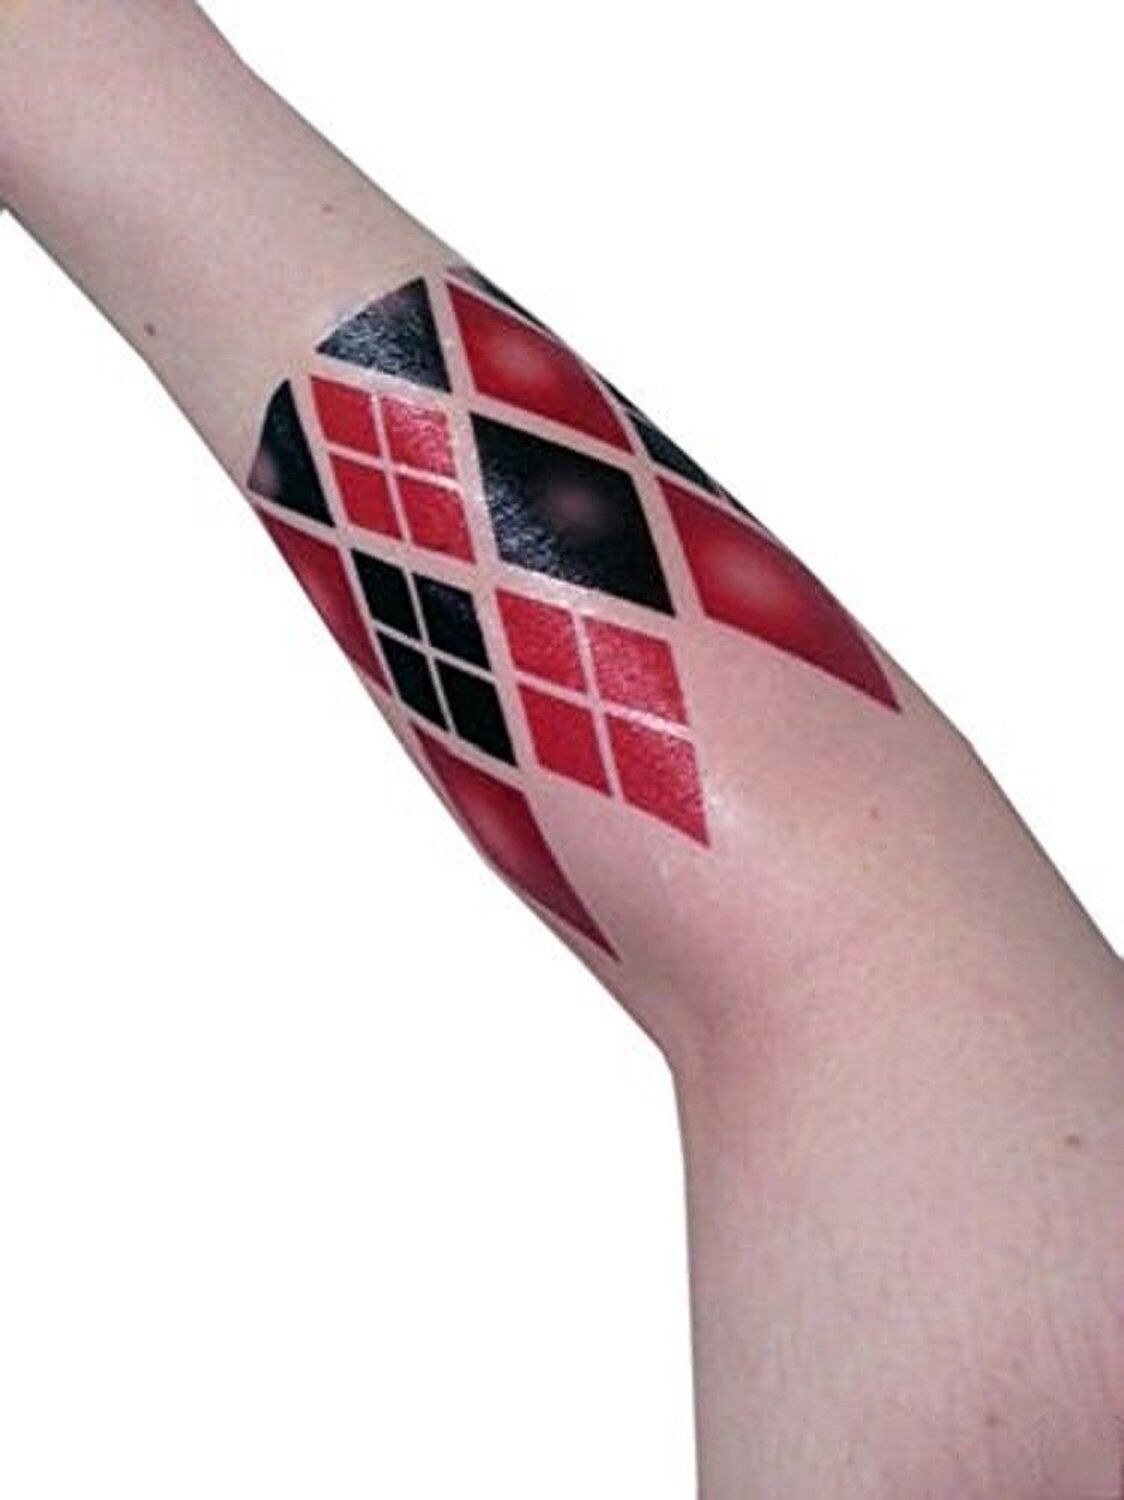 harley quinn tattoos arm